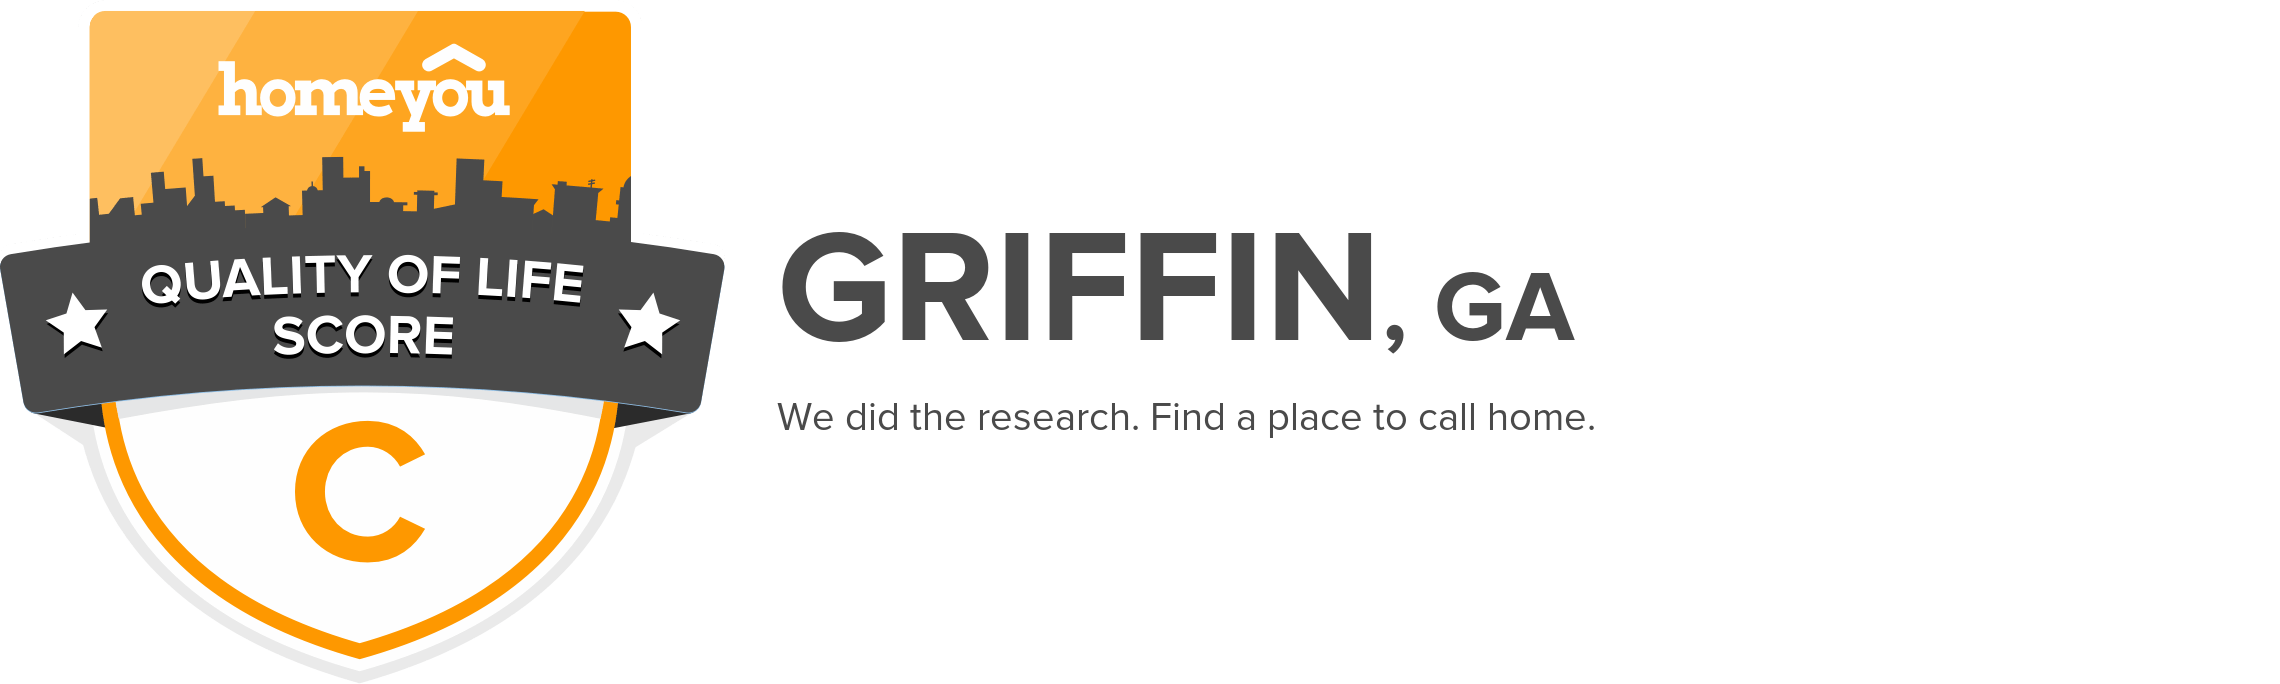 Griffin, GA